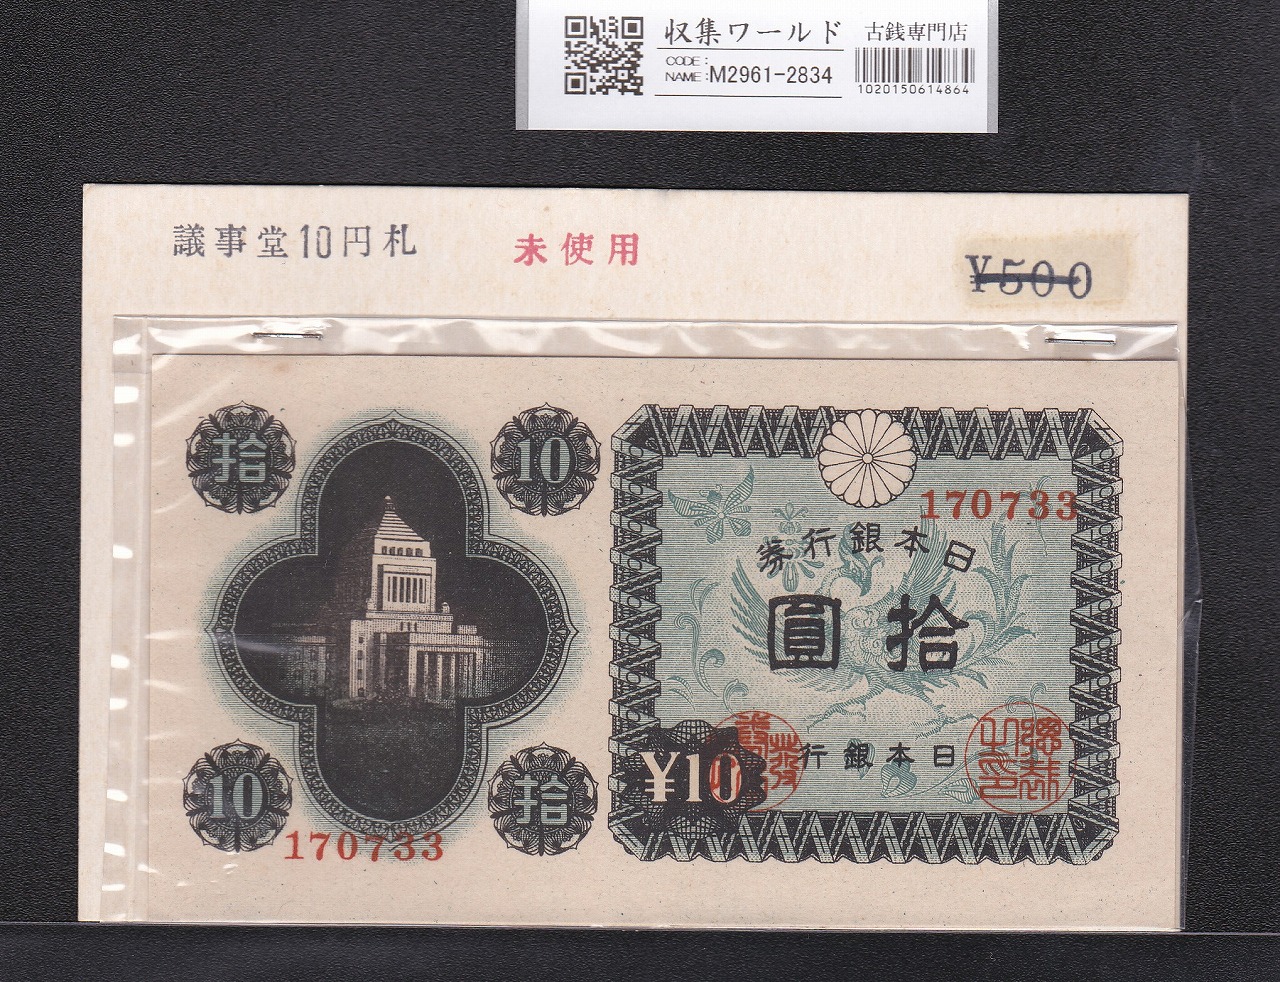 日本銀行券A号 10円議事堂 1946年銘版(昭和21年) No.170733 未使用